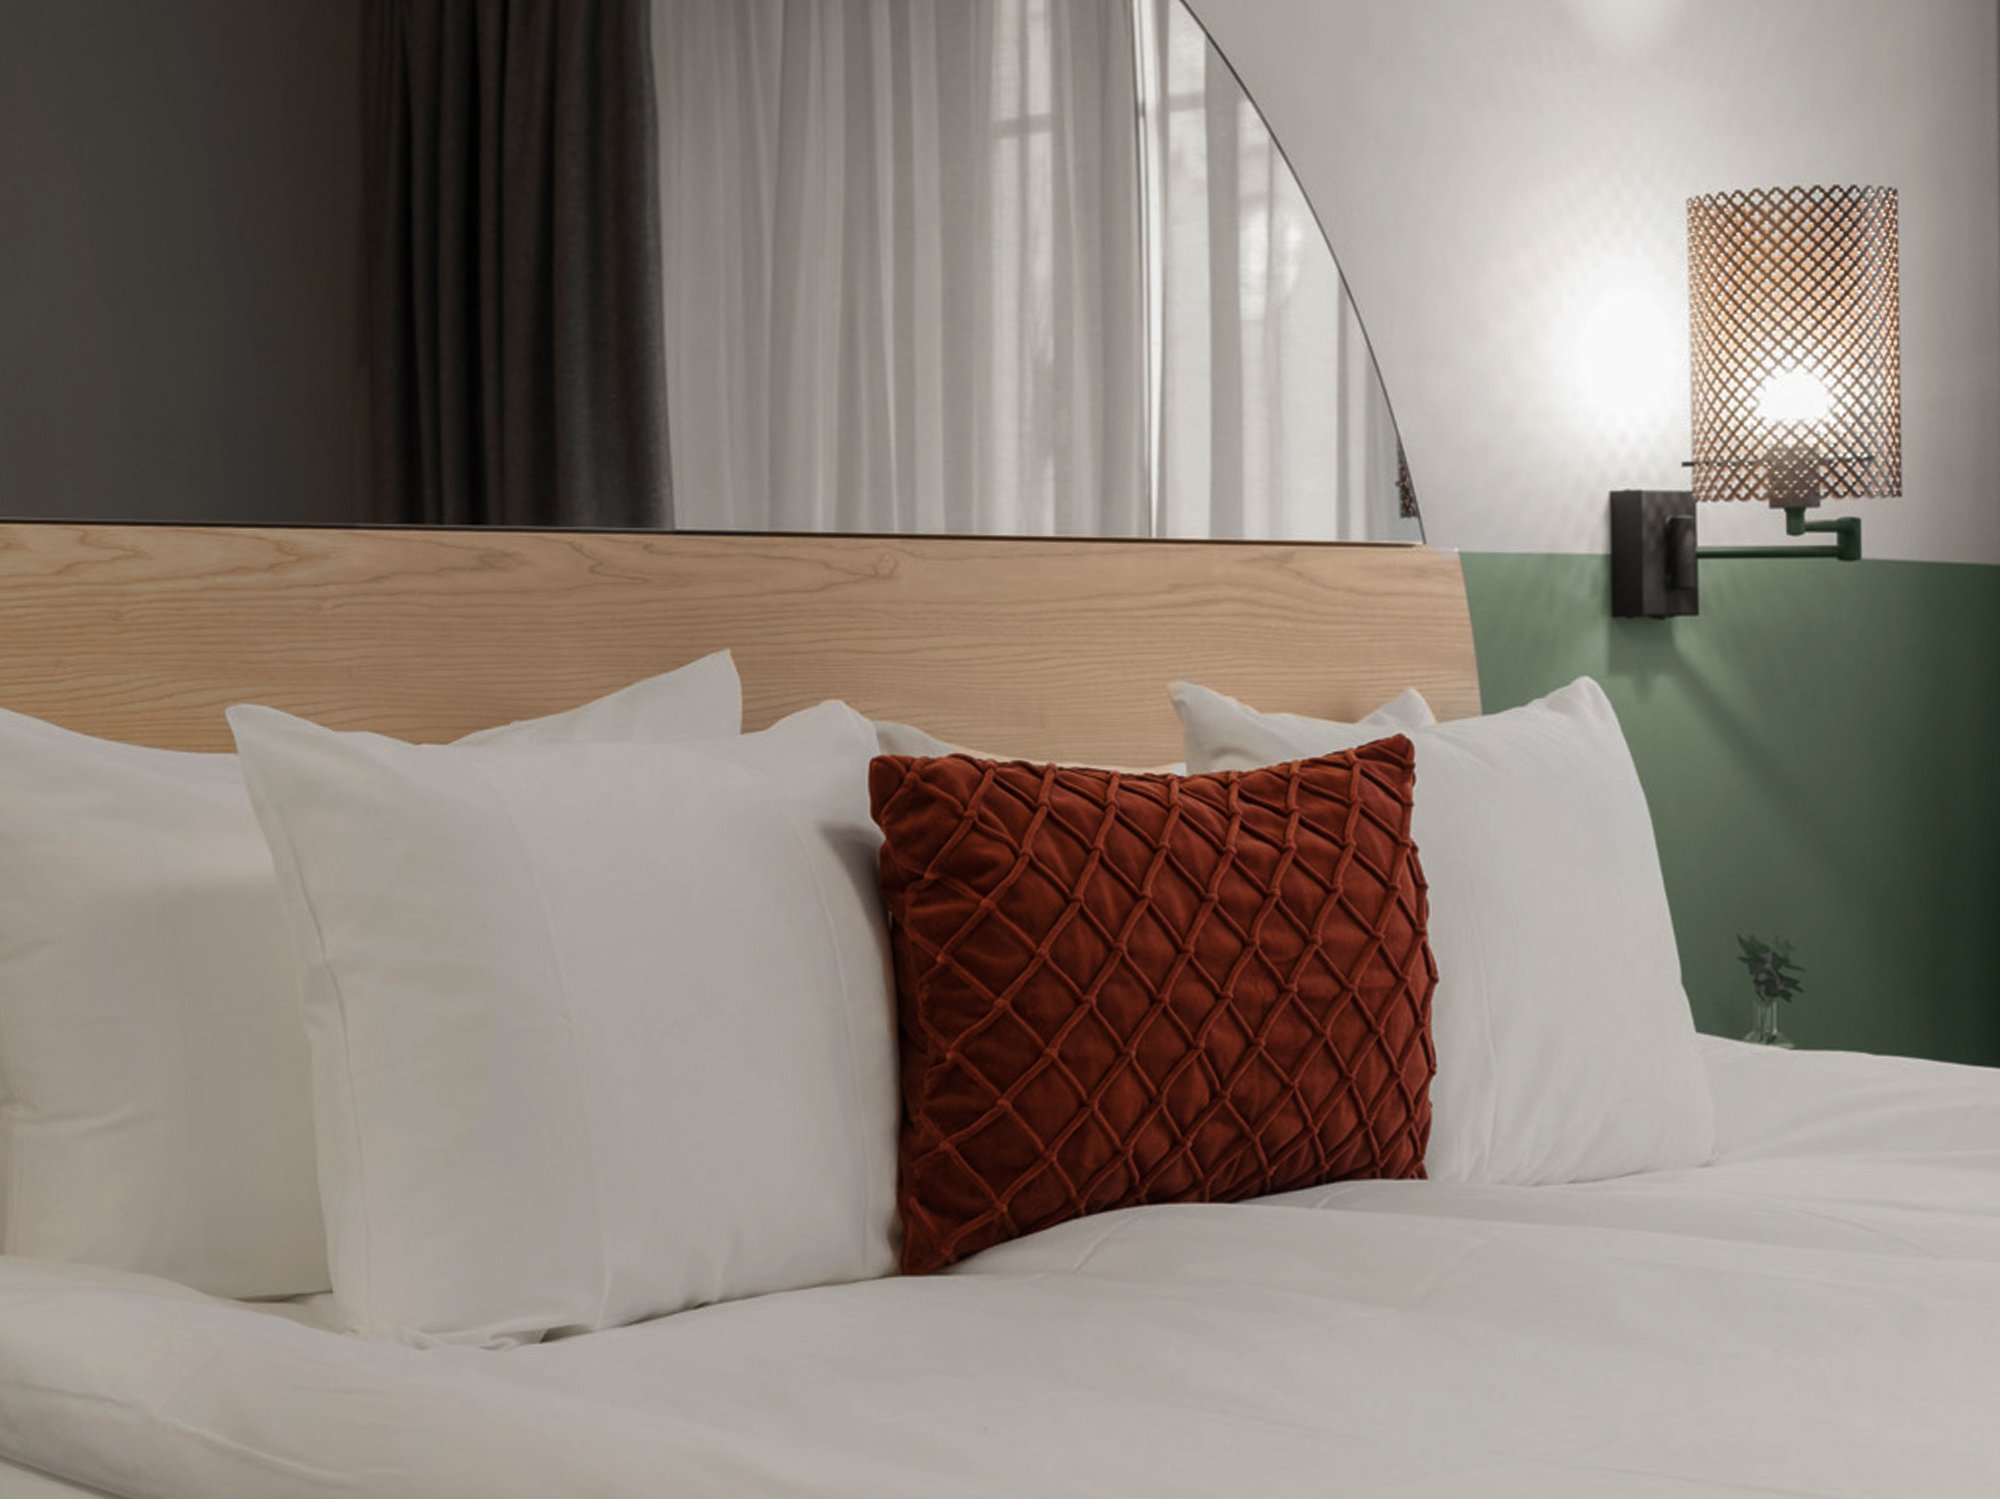 Mysigt hotellrum med säng, spegel och sänglampa